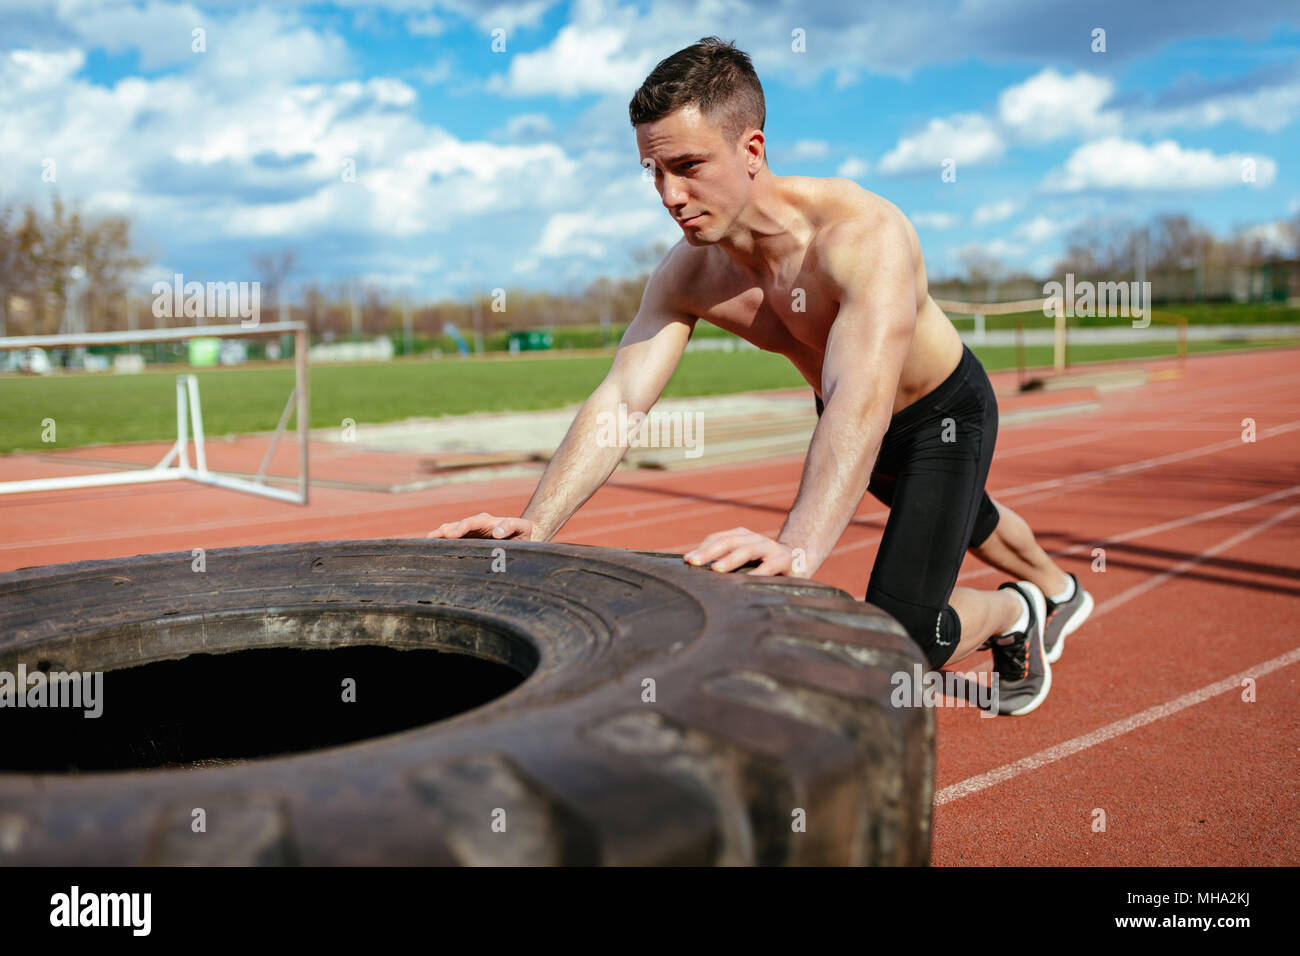 Junge muskulöse Mann oben schieben einen riesigen Reifen für Training Muskeln an der Tartanbahn auf dem Stadion. Stockfoto